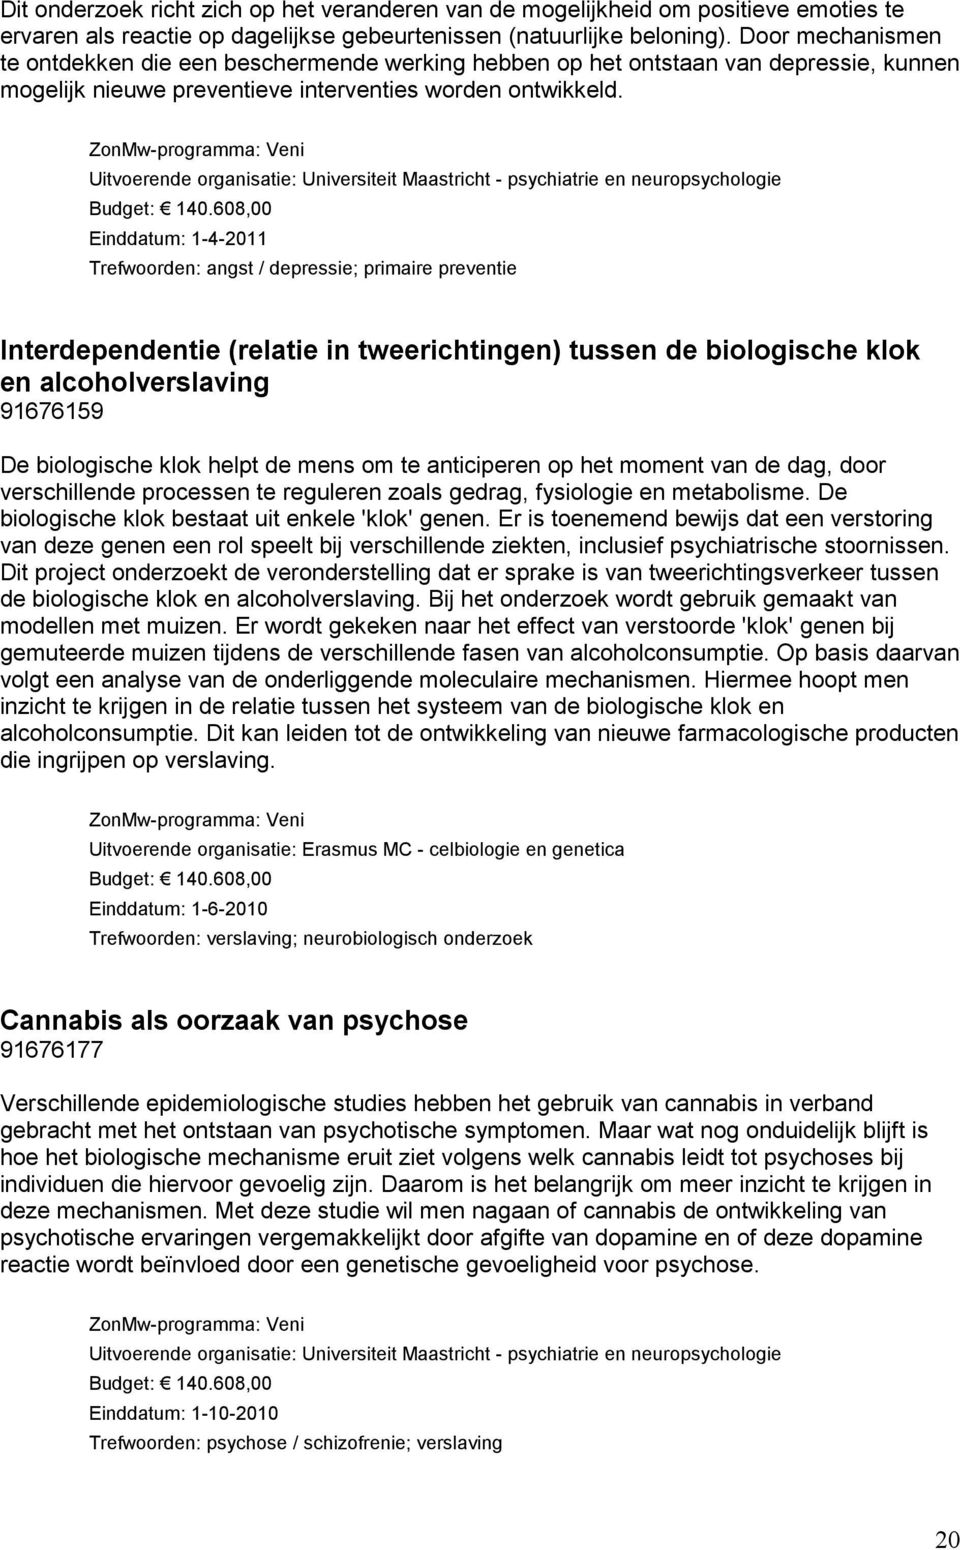 ZonMw-programma: Veni Uitvoerende organisatie: Universiteit Maastricht - psychiatrie en neuropsychologie Budget: 140.